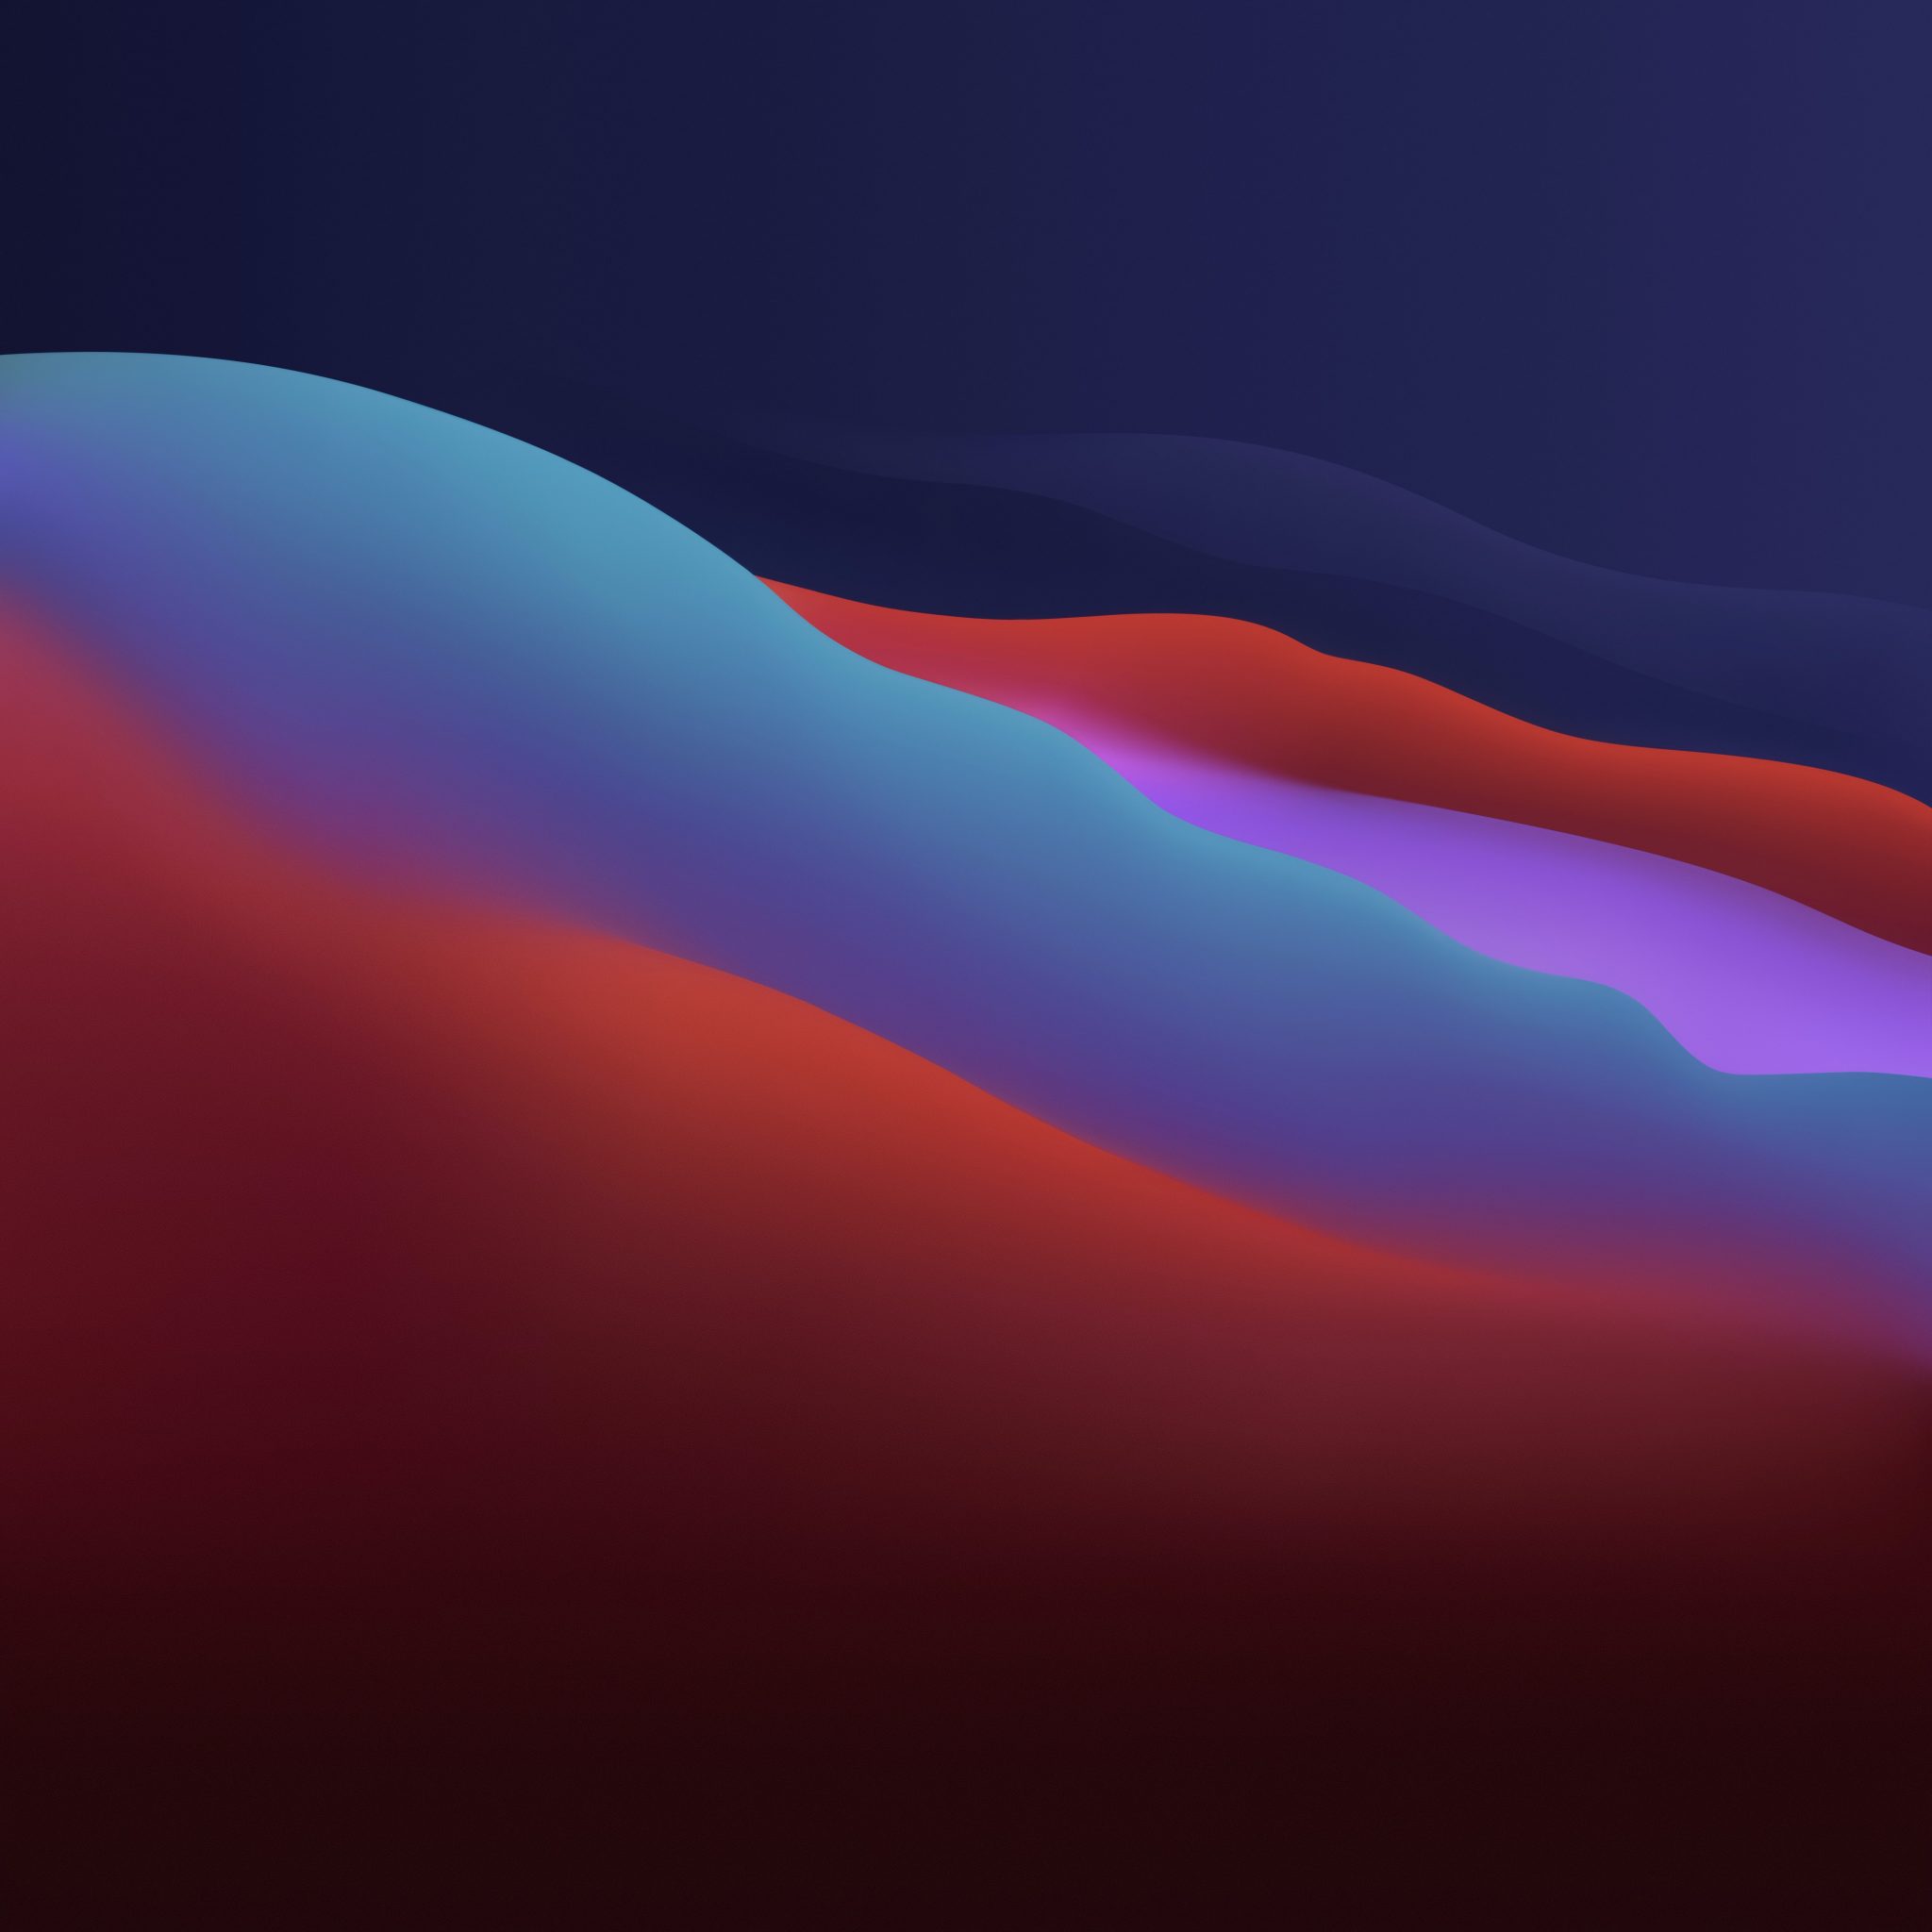 Hình nền macOS Big Sur sẽ mang đến cho bạn một trải nghiệm thật tuyệt vời với thiết kế đơn giản và mới lạ, những đường nét mềm mại, màu sắc sống động, tất cả kết hợp nhằm tạo nên một giao diện thật hoàn mỹ.